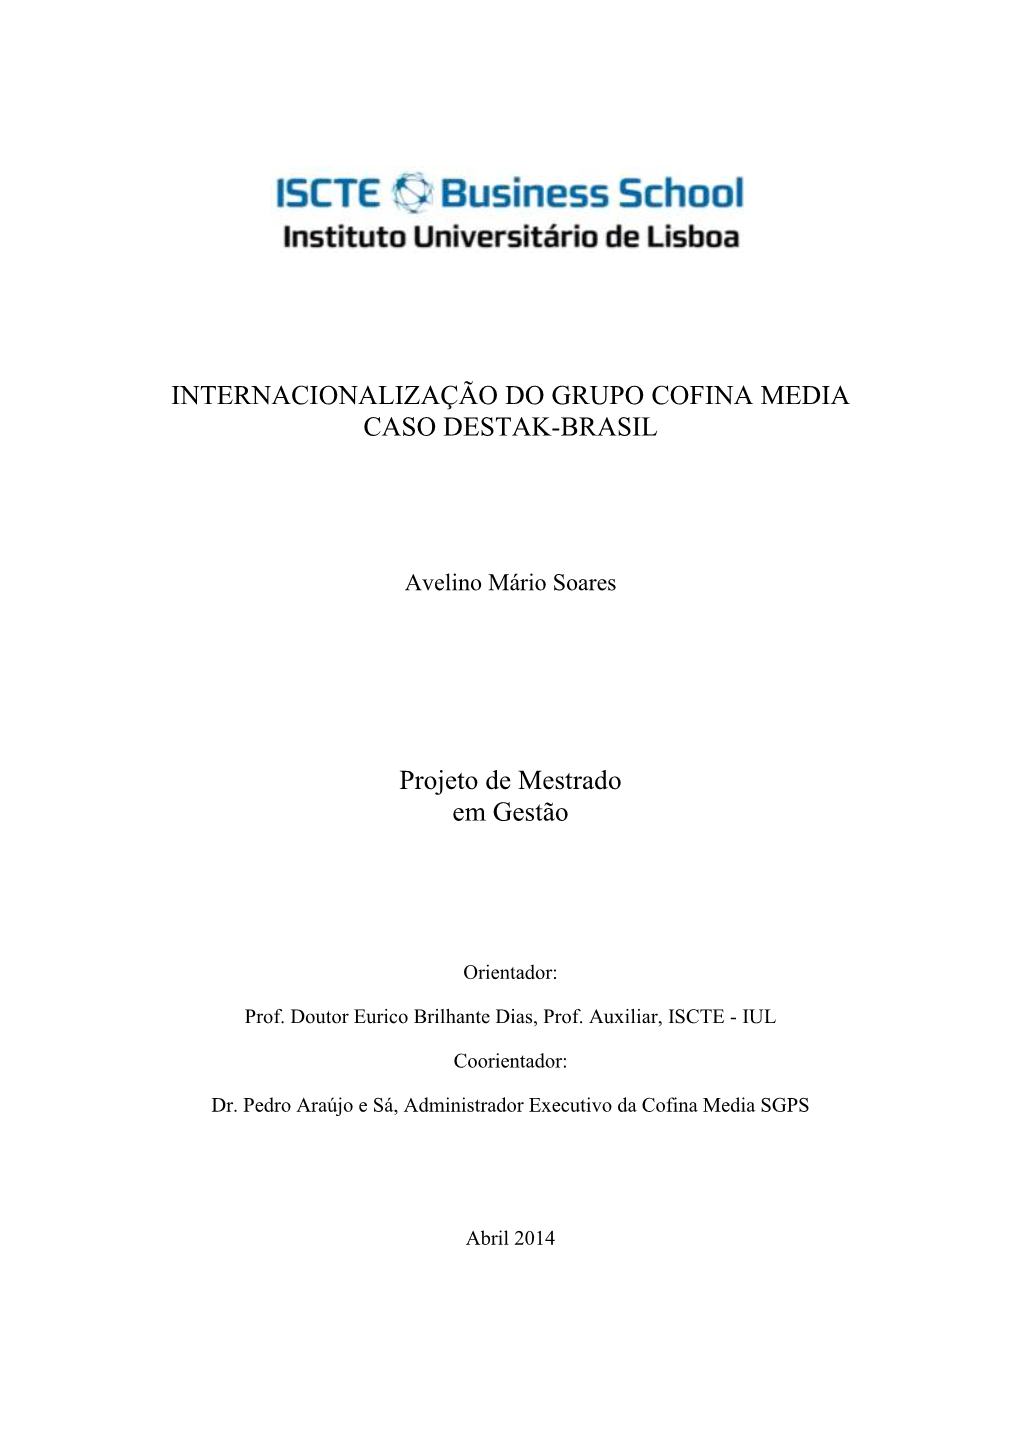 Internacionalização Do Grupo Cofina Media Caso Destak-Brasil